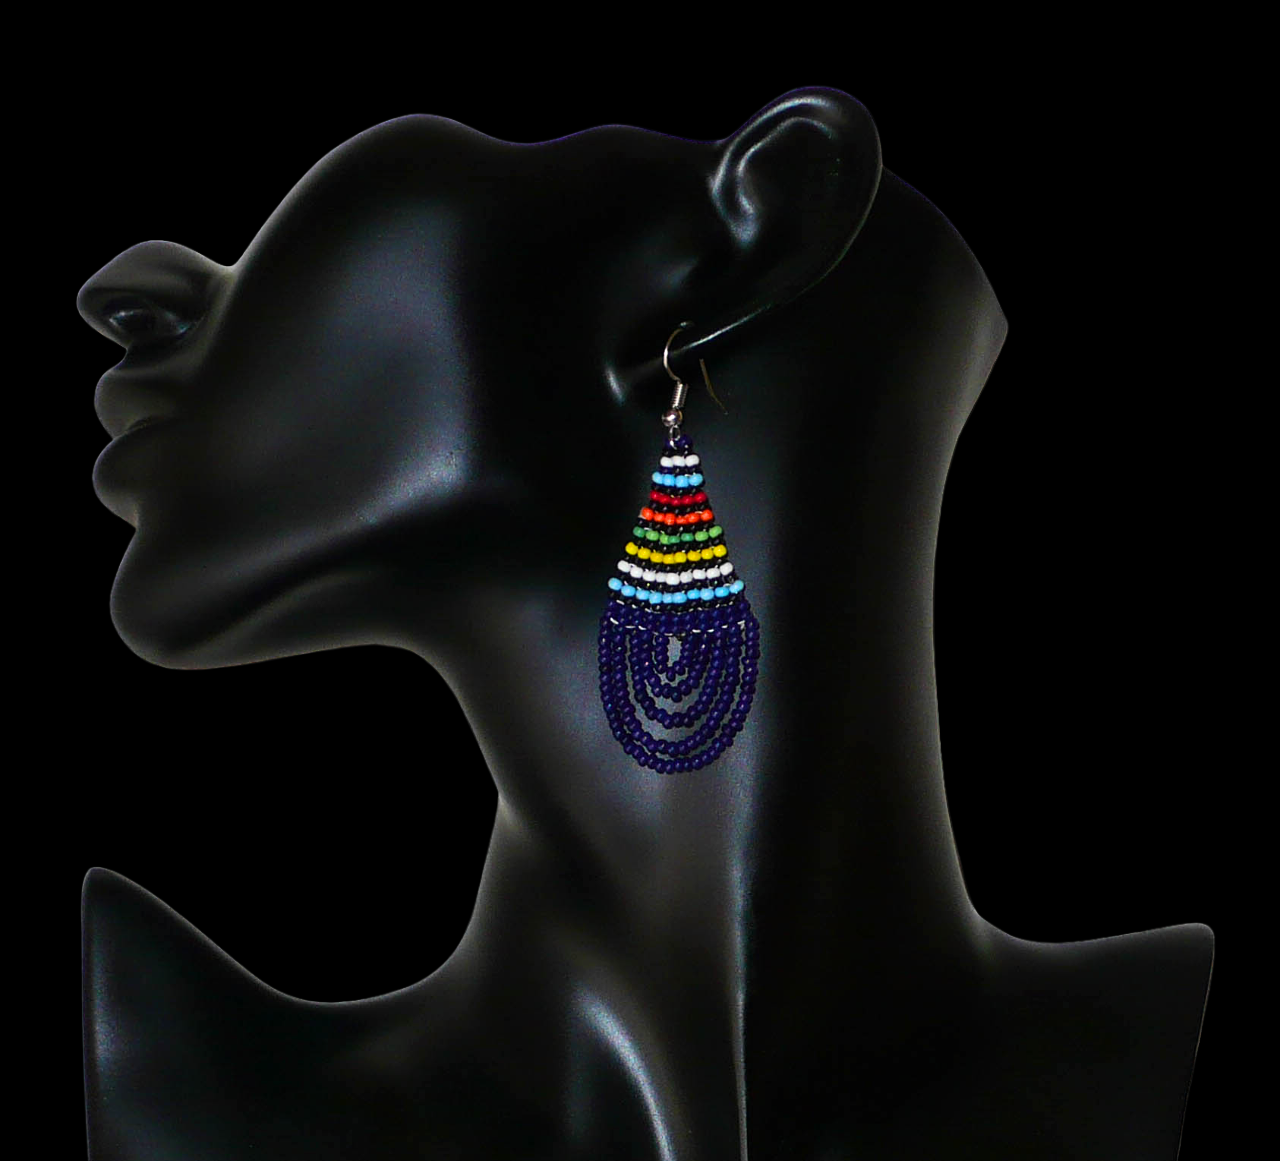 Boucles d'oreilles ethniques sud-africaines en forme de gouttes composées d'un tissage de perles de rocaille bleu foncé et multicolores. Elles mesurent 7 cm de long et 2,5 cm de large et se portent sur des oreilles percées. Timeless Fineries